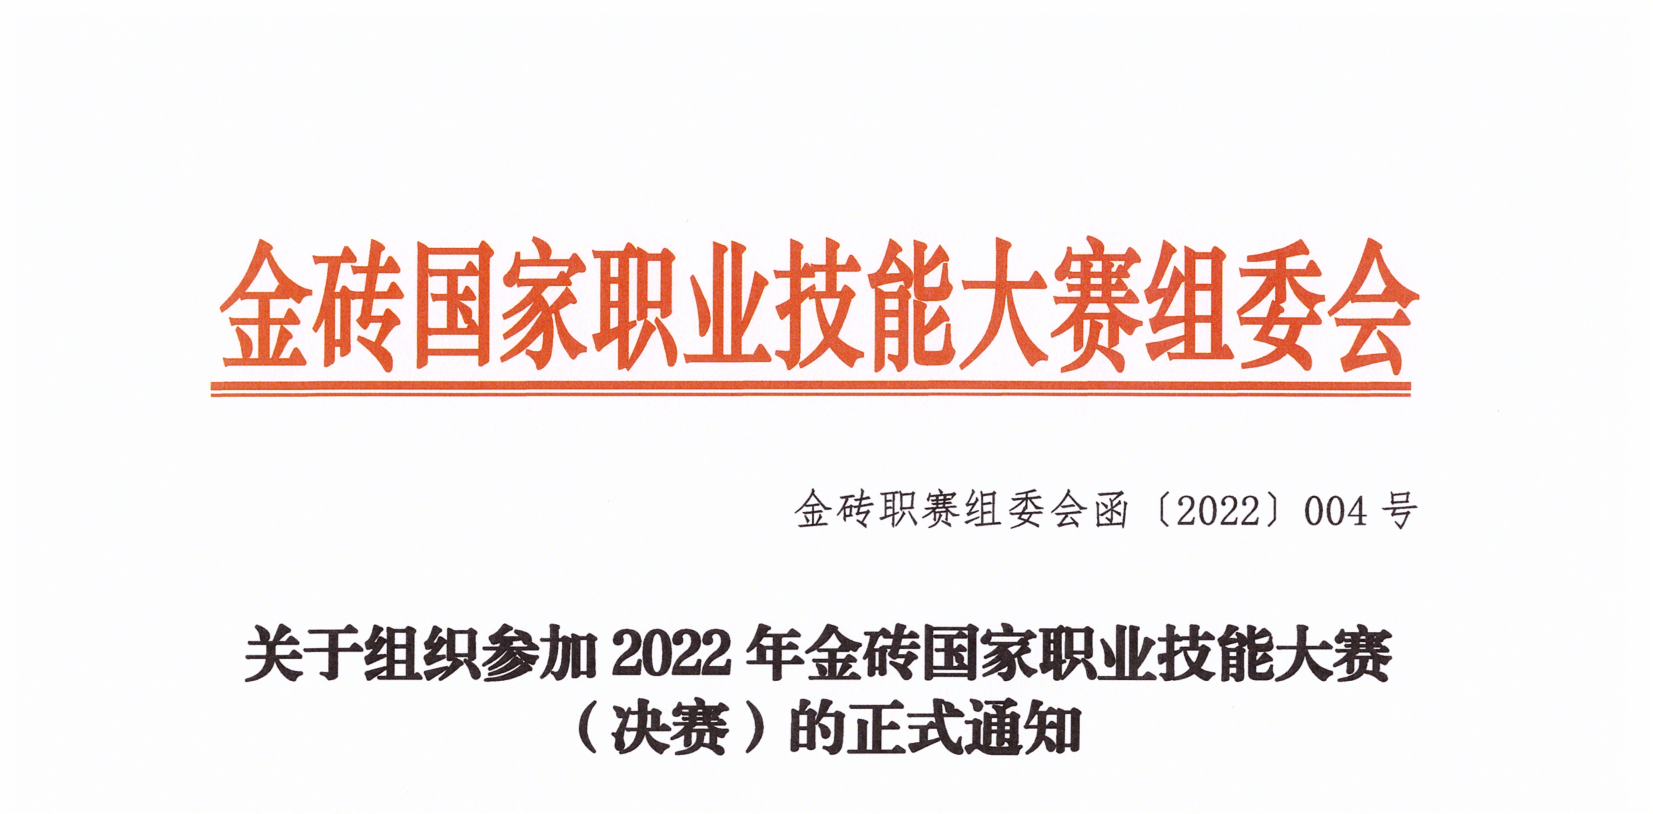 关于组织参加2022年金砖国家职业技能大赛(决赛)的正式通知